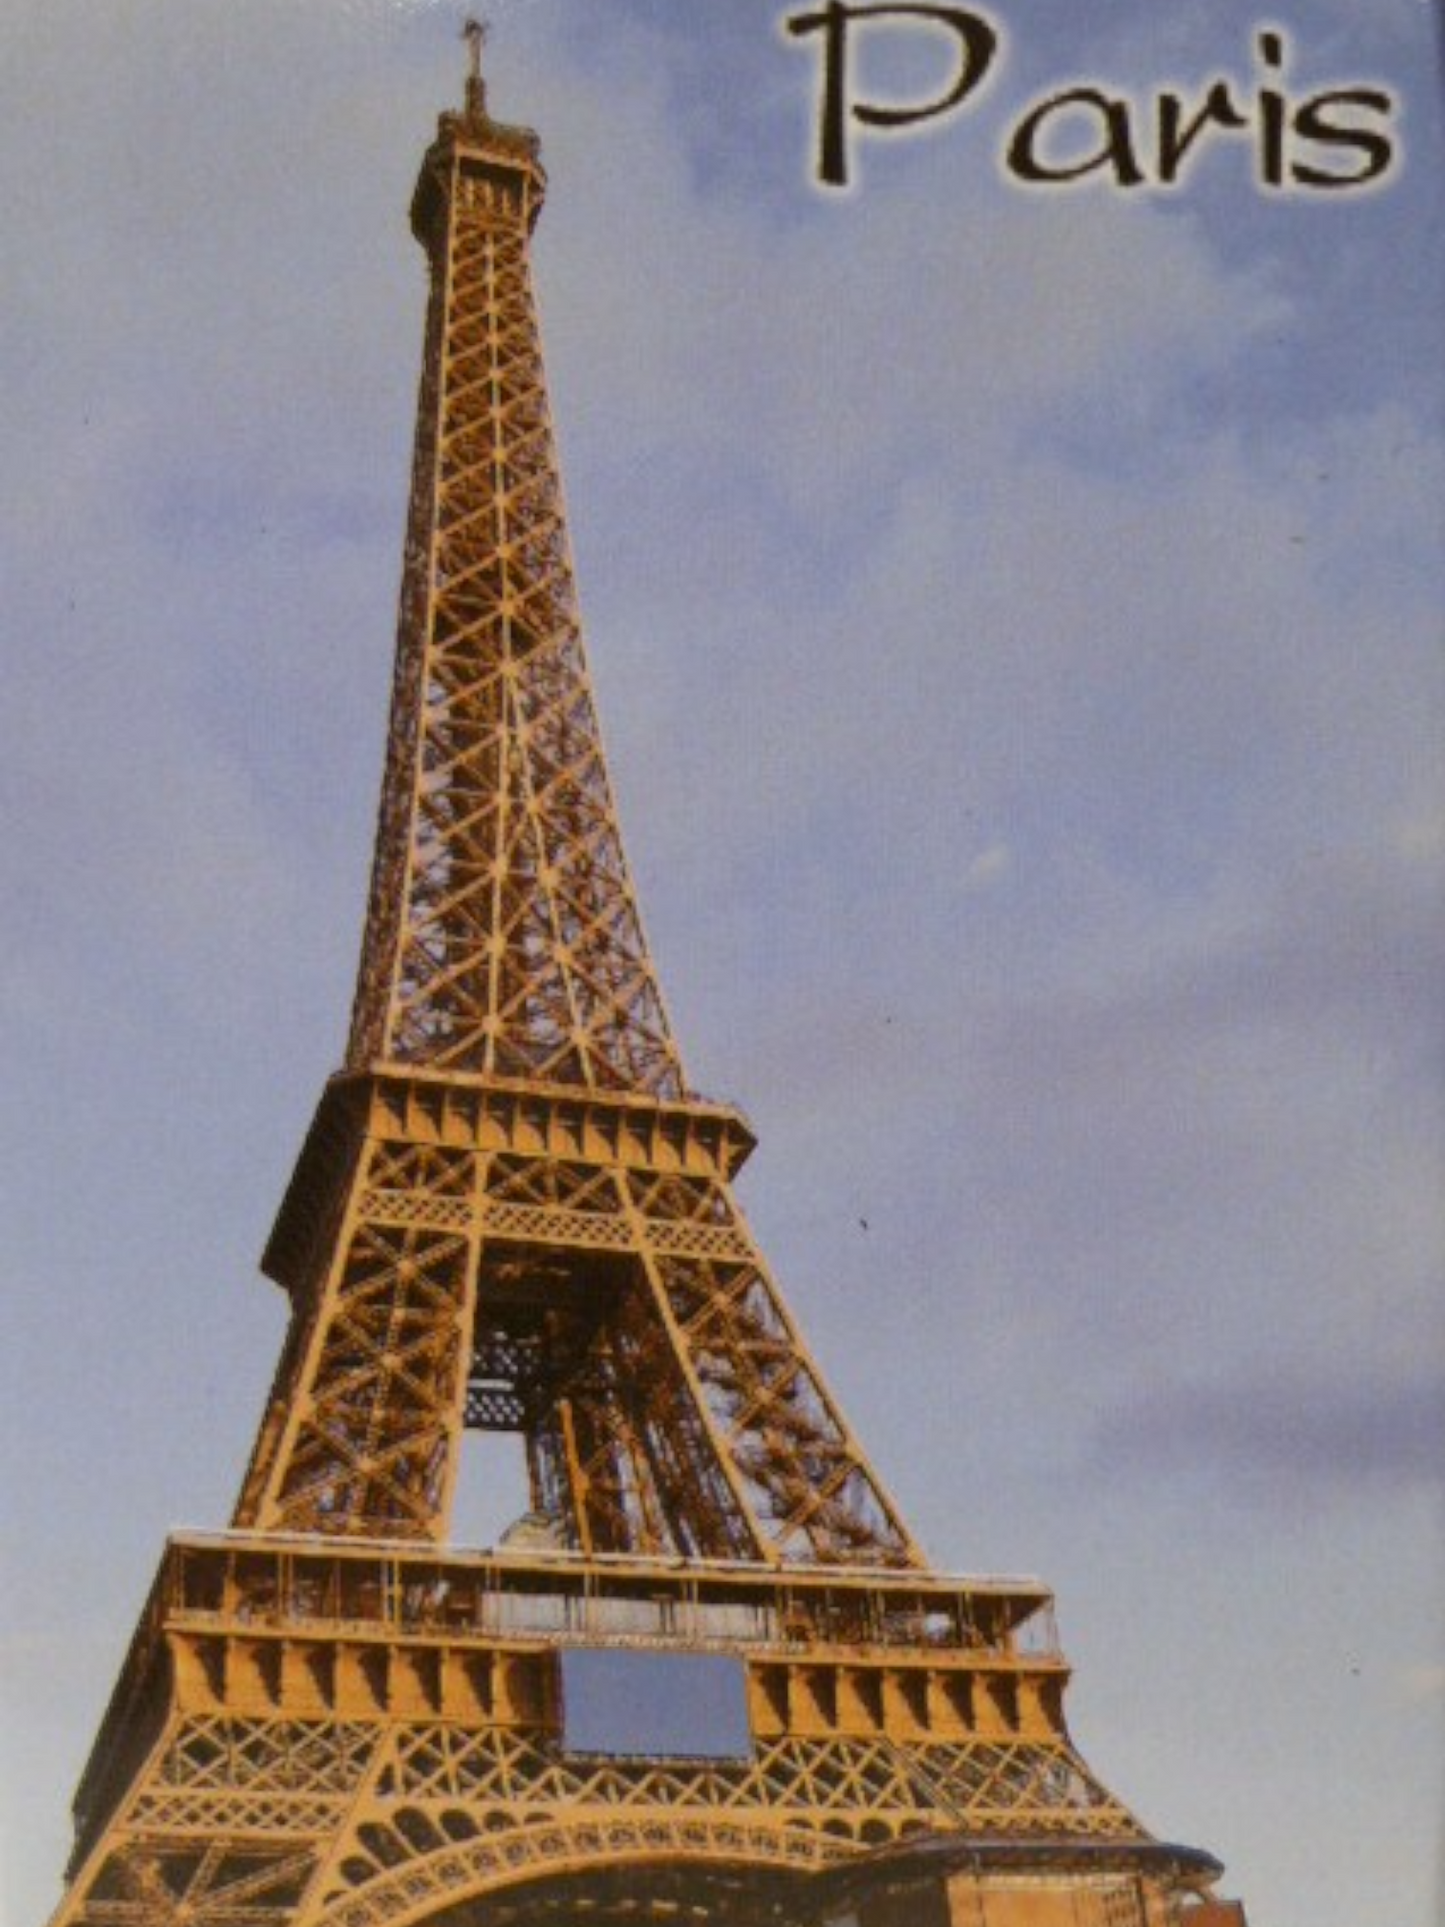 Paris France Eiffel Tower Fridge Collector's Souvenir Magnet 2.5" X 3.5"